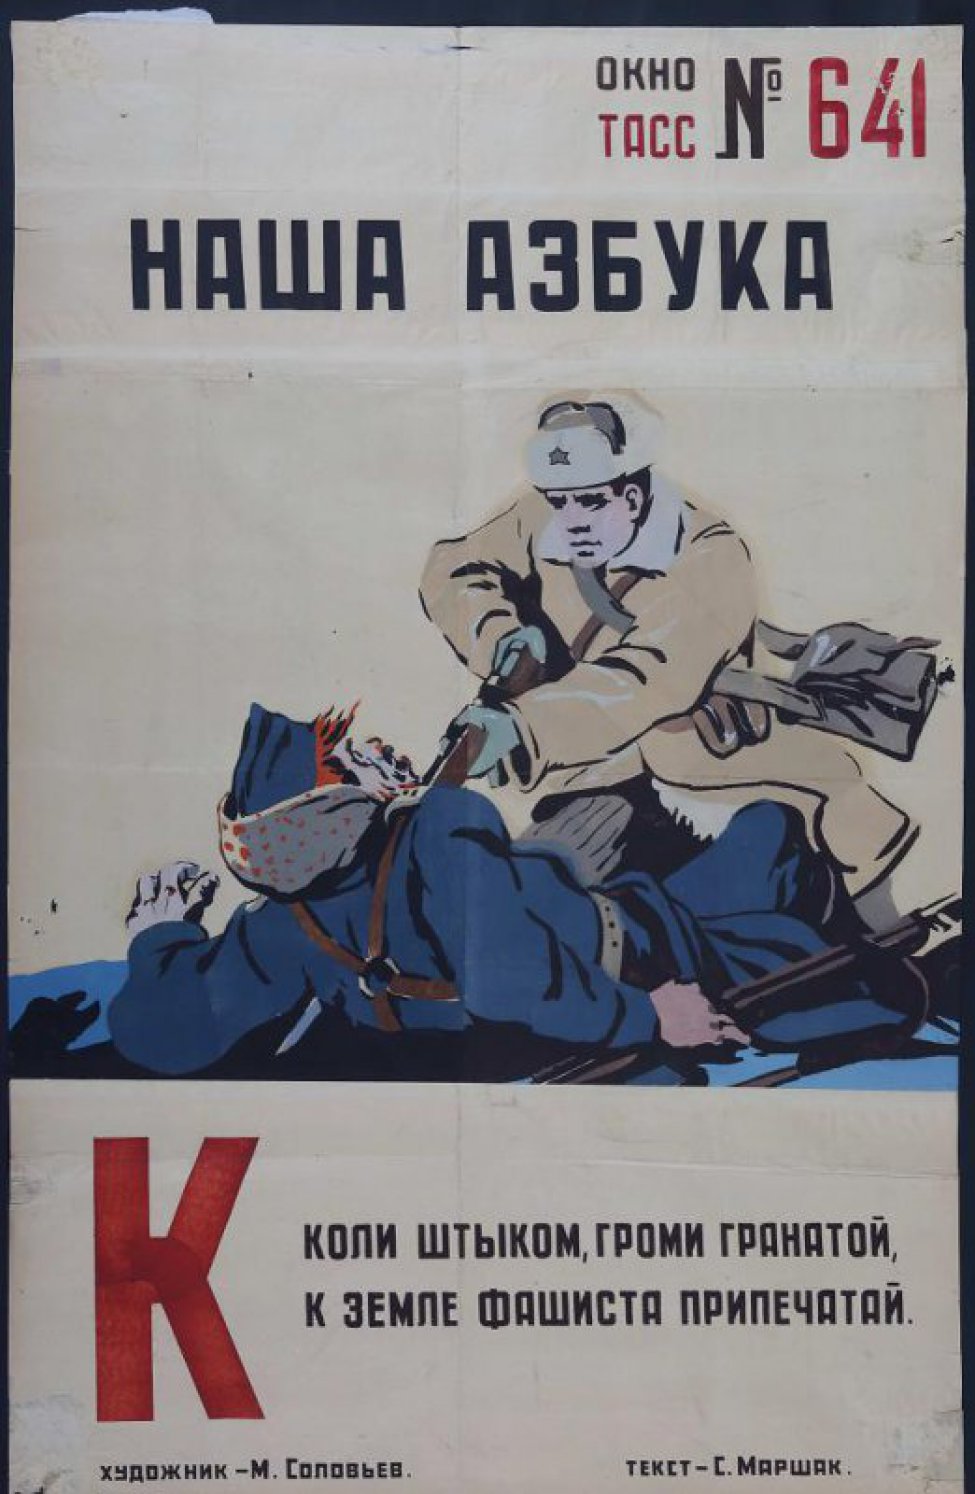 Изображен советский воин прокалывающий штыком упавшего фашиста, текст С.Маршака:" Коли штыком,громи гранатой..."